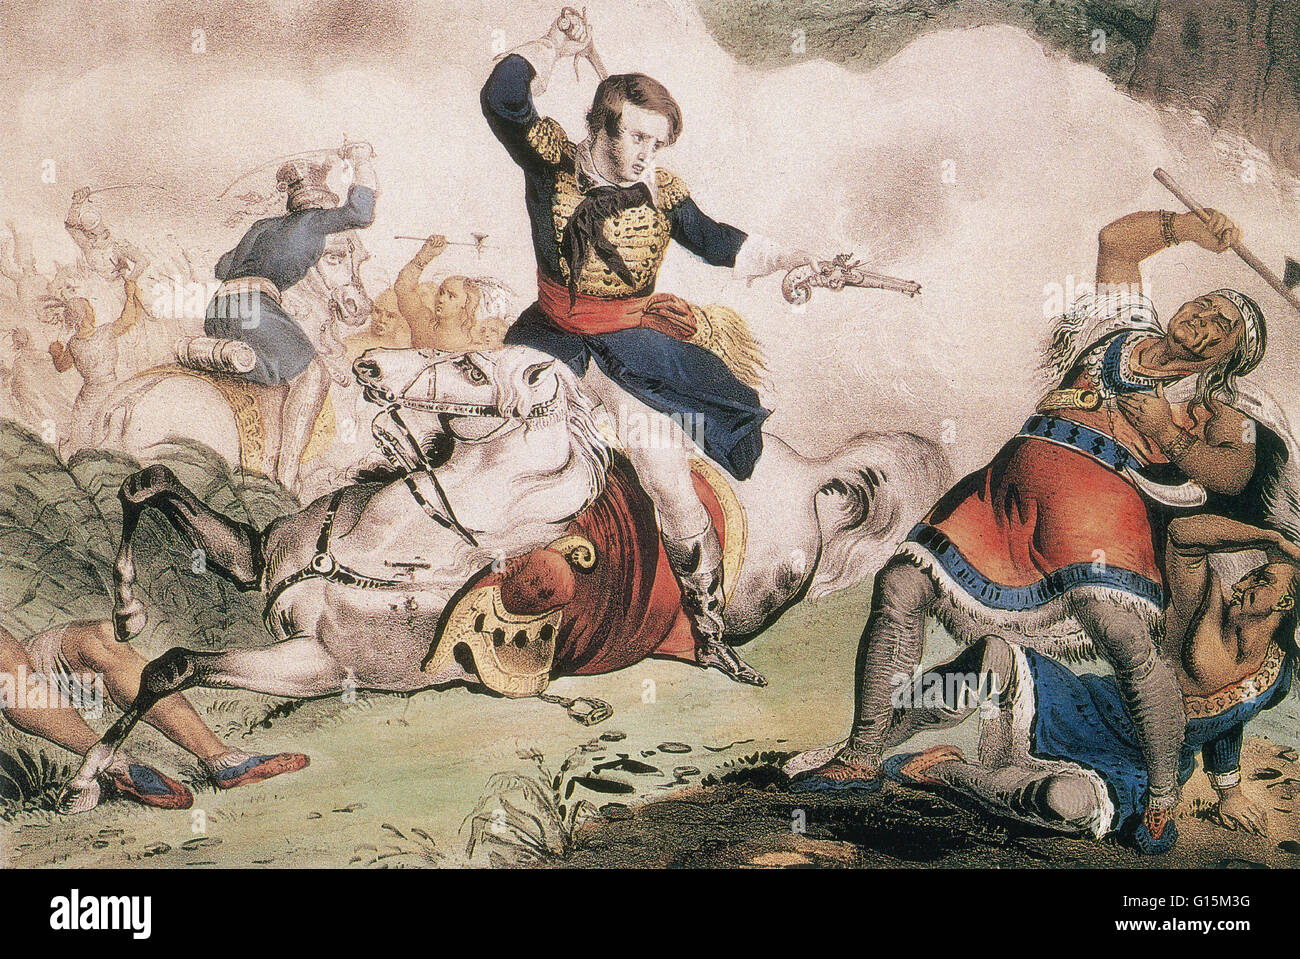 Currier & Ives lithographie représentant le Colonel Richard Johnson Tecumseh tir pendant une charge de cavalerie. Tecumseh (1768-1813) était un chef amérindien de la tribu Shawnee et une grande confédération (la confédération de Tecumseh) qui s'est opposé à l'United State Banque D'Images